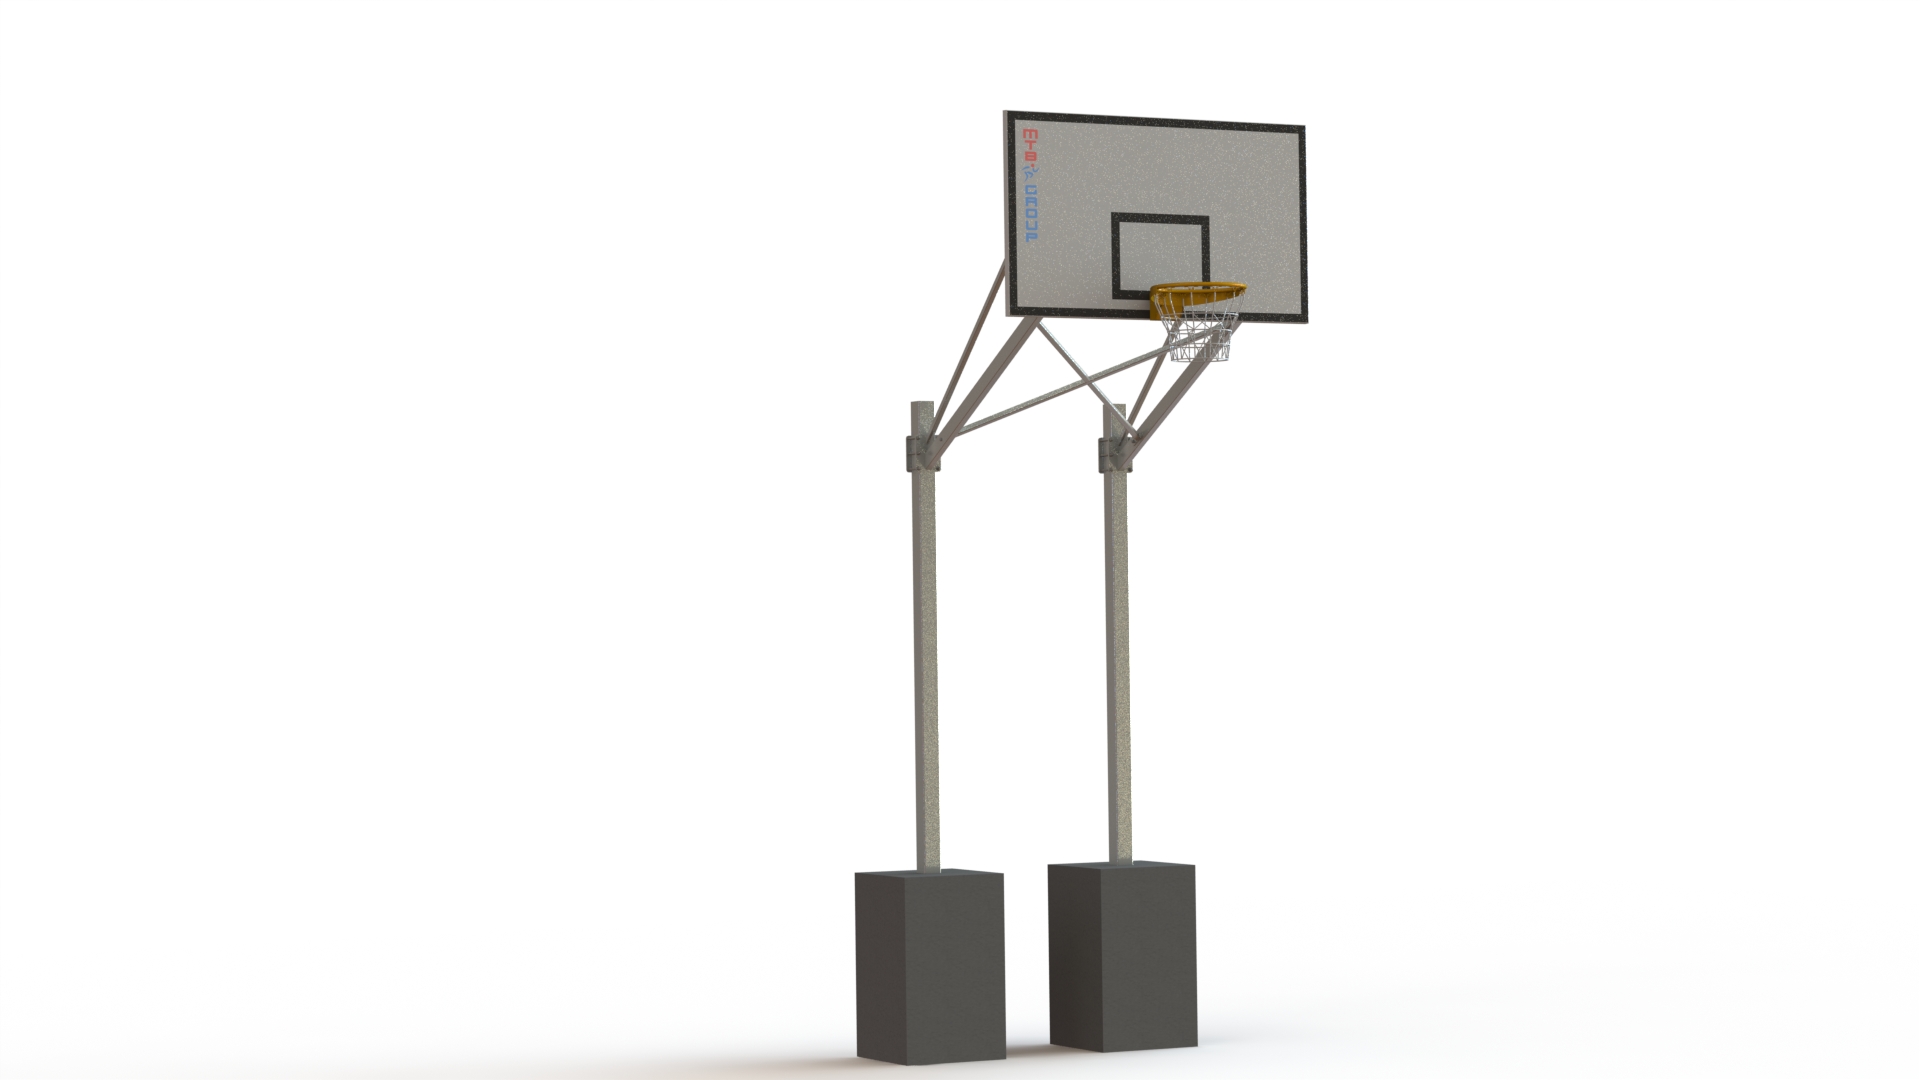 Basketbalová konstrukce dvousloupová, výsun 1,4 m